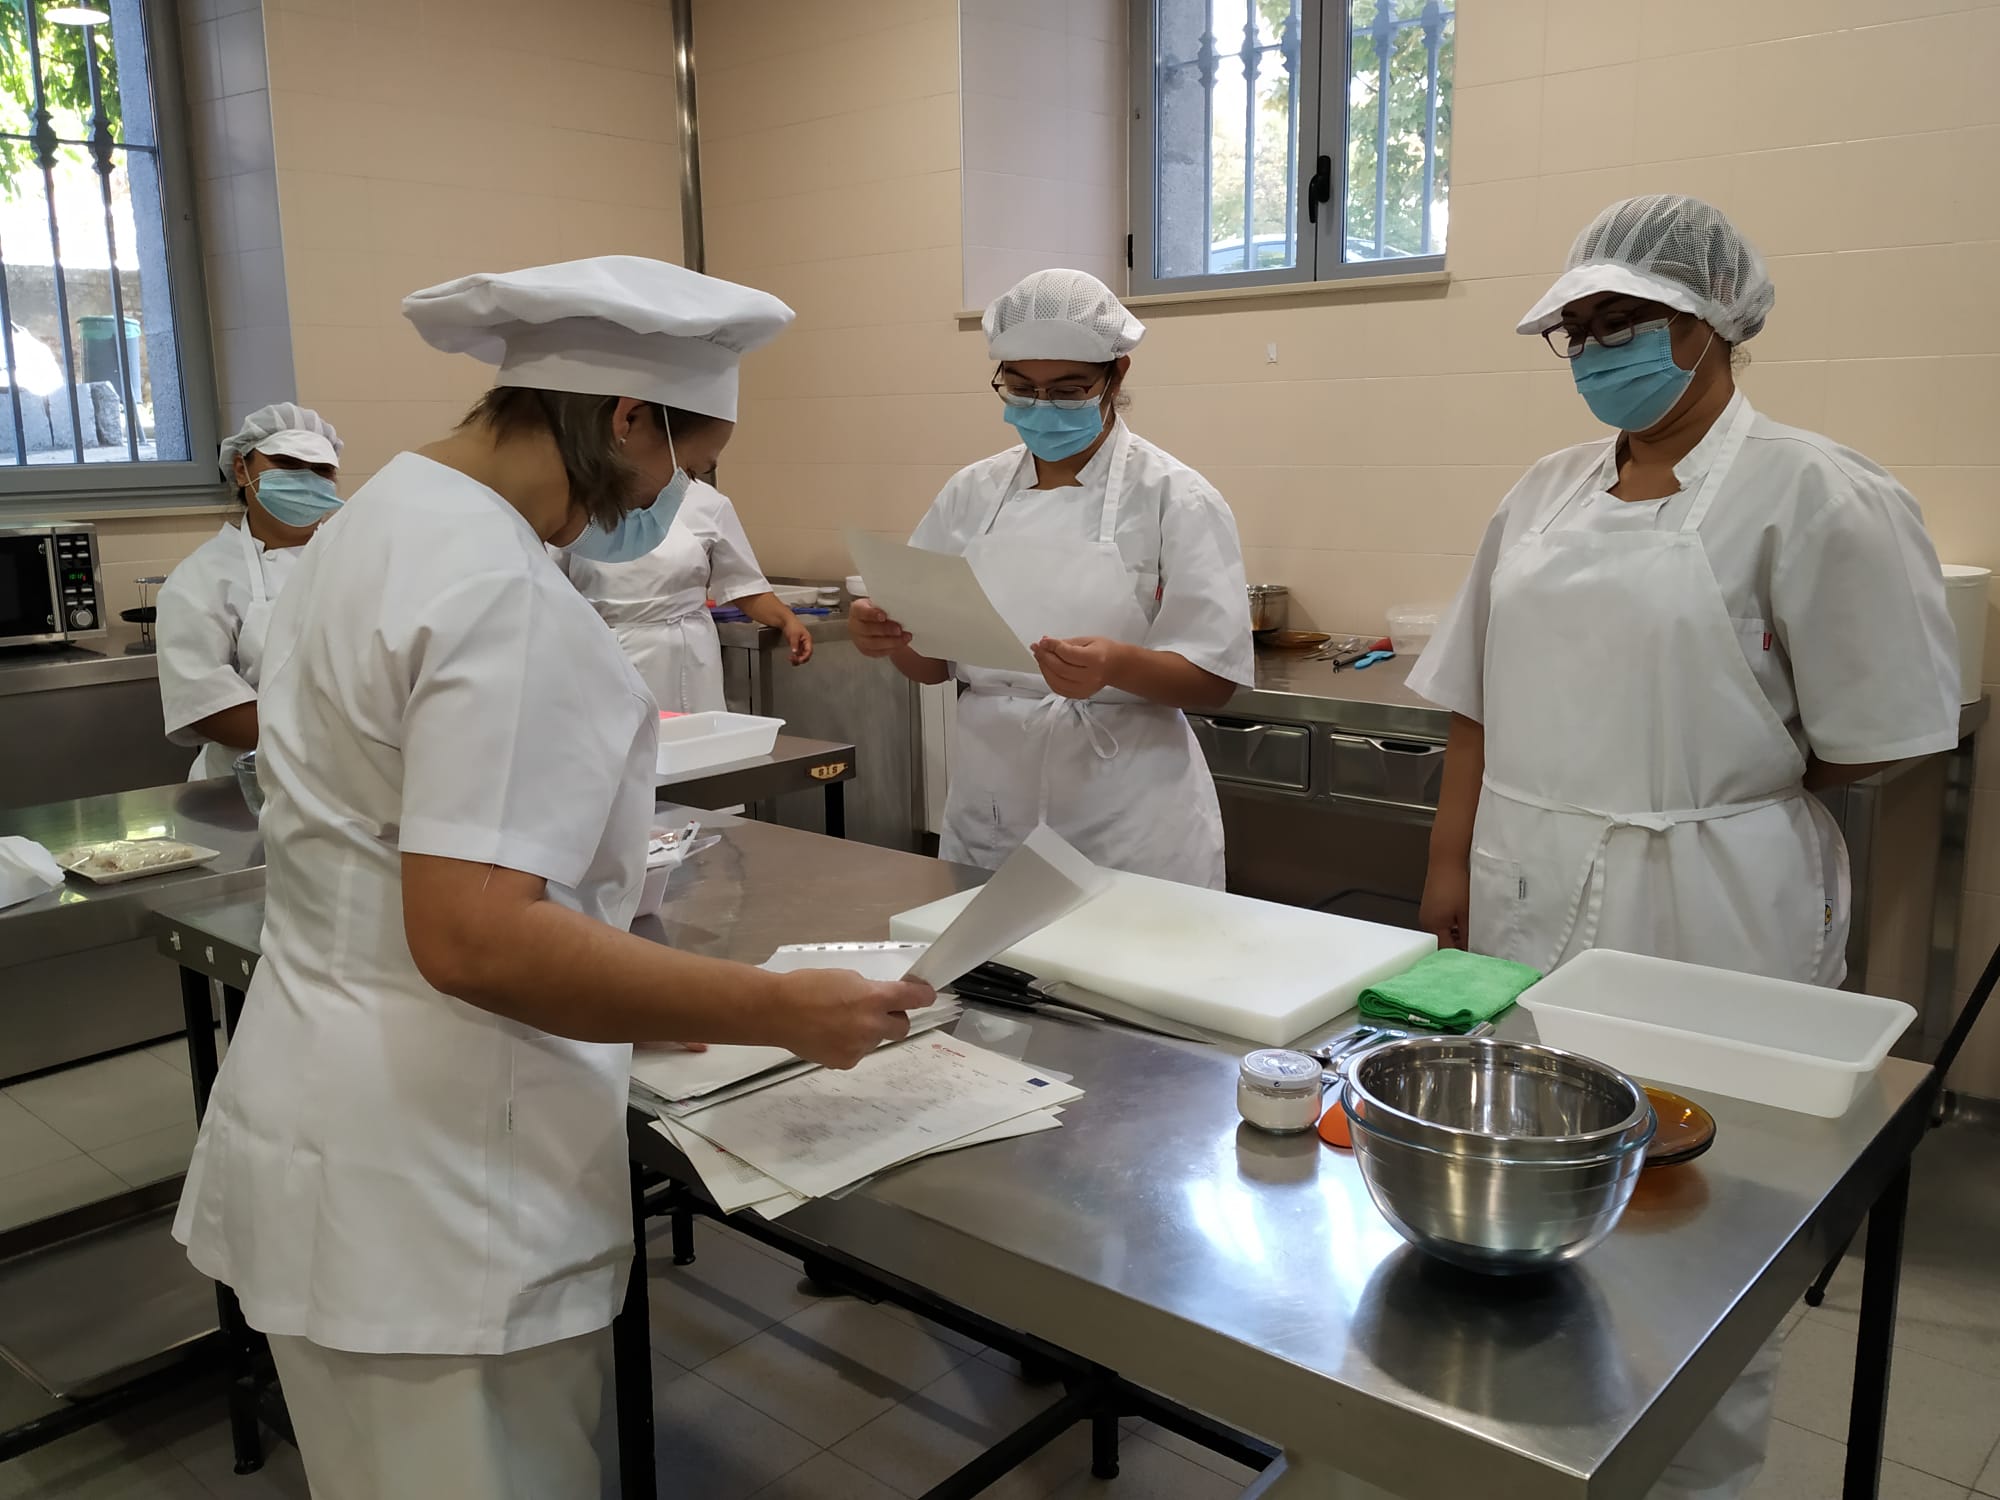 Cáritas de Salamanca pone en marcha un curso de operaciones básicas en la cocina para personas desempleadas.